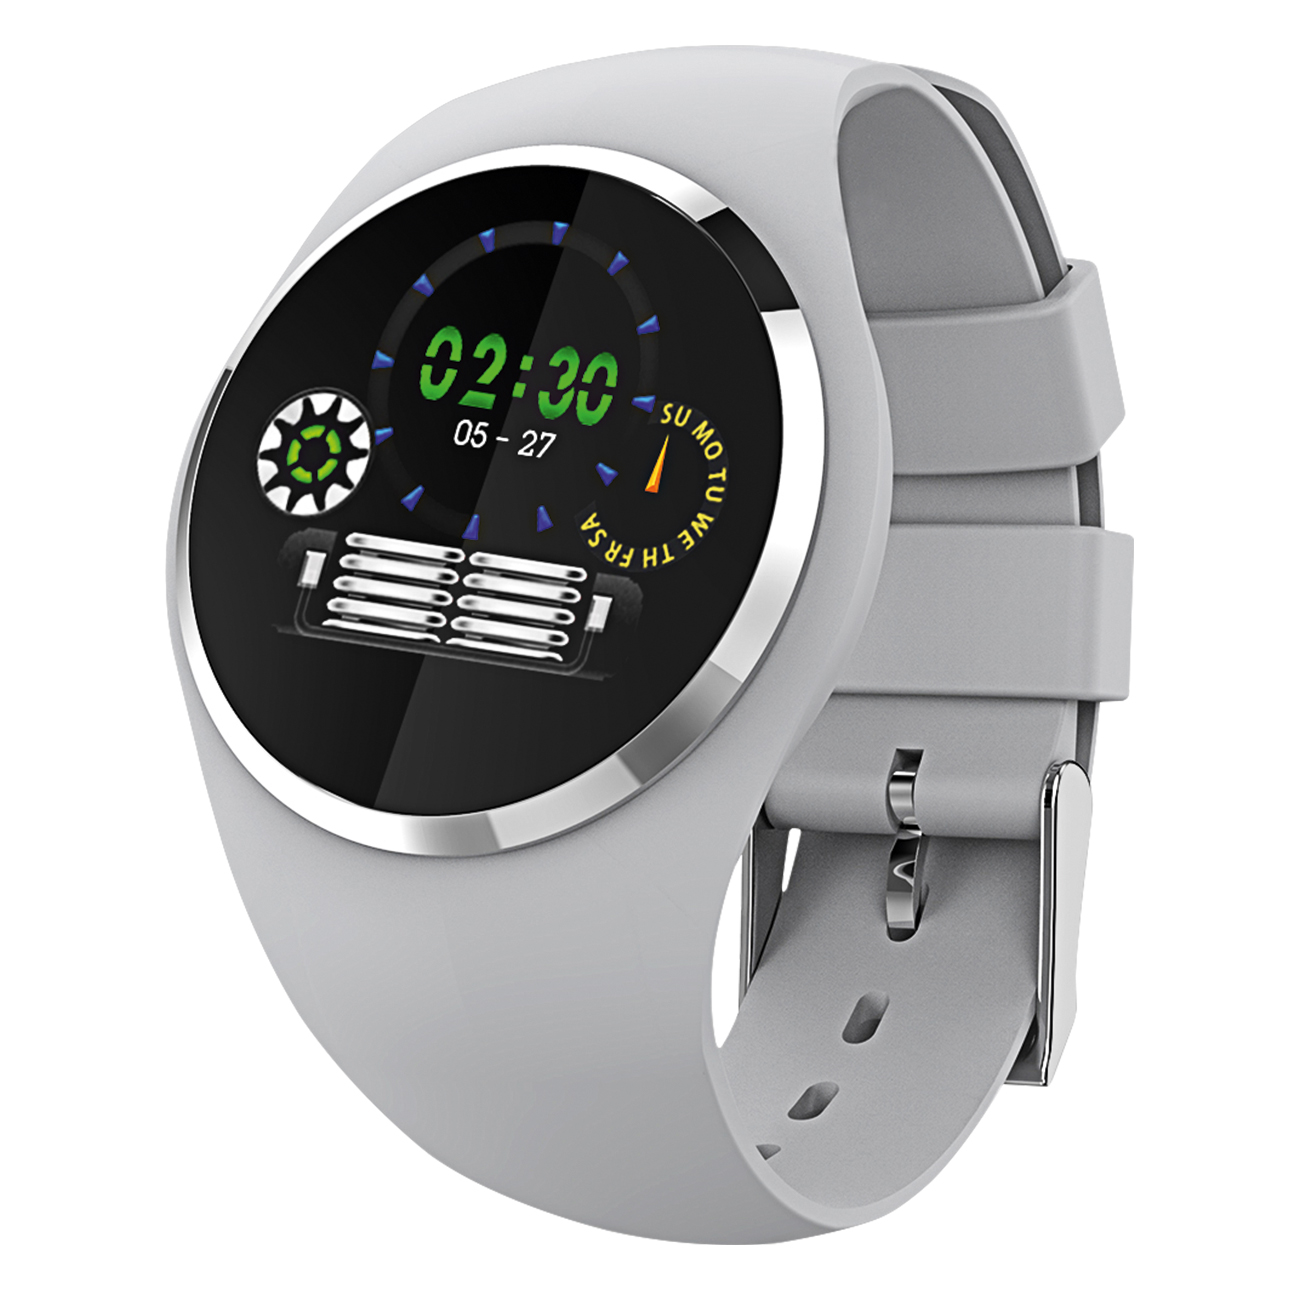 Horlogeband voor Fitness Tracker rond, grijs